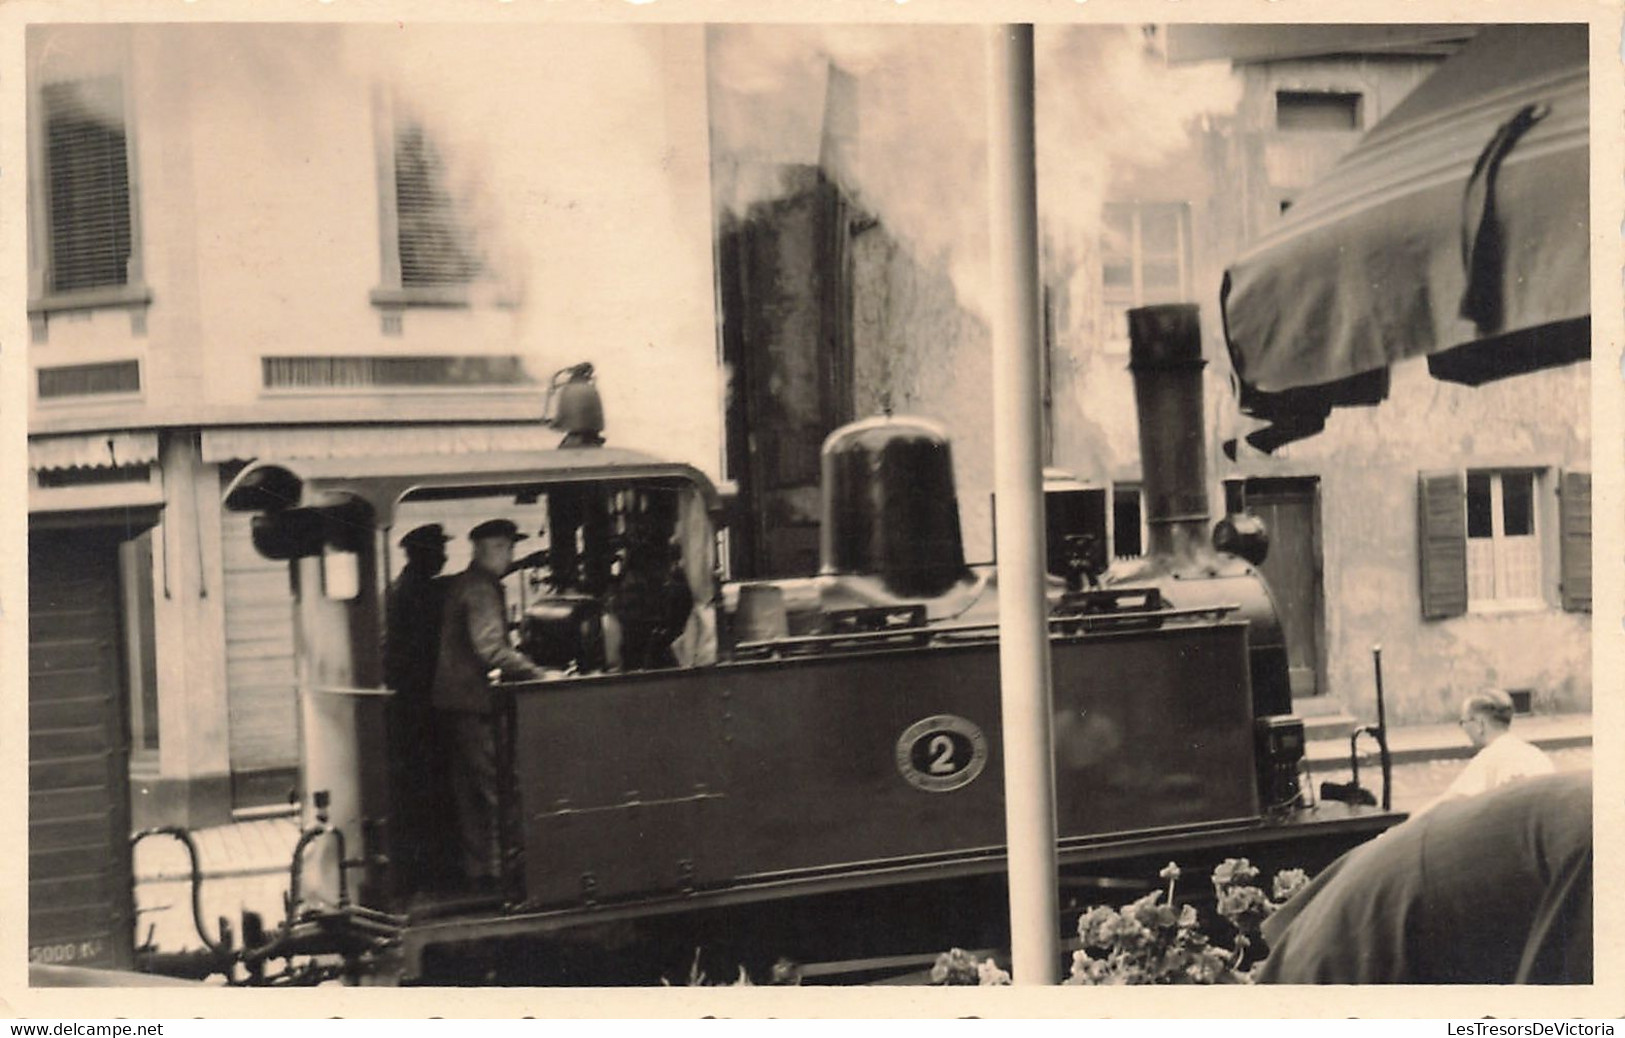 CPA - Carte Photo - Locomotive A Vapeur - Animé - Bords Dentelés - Oblitéré Bruxelles 1942 - Eisenbahnen